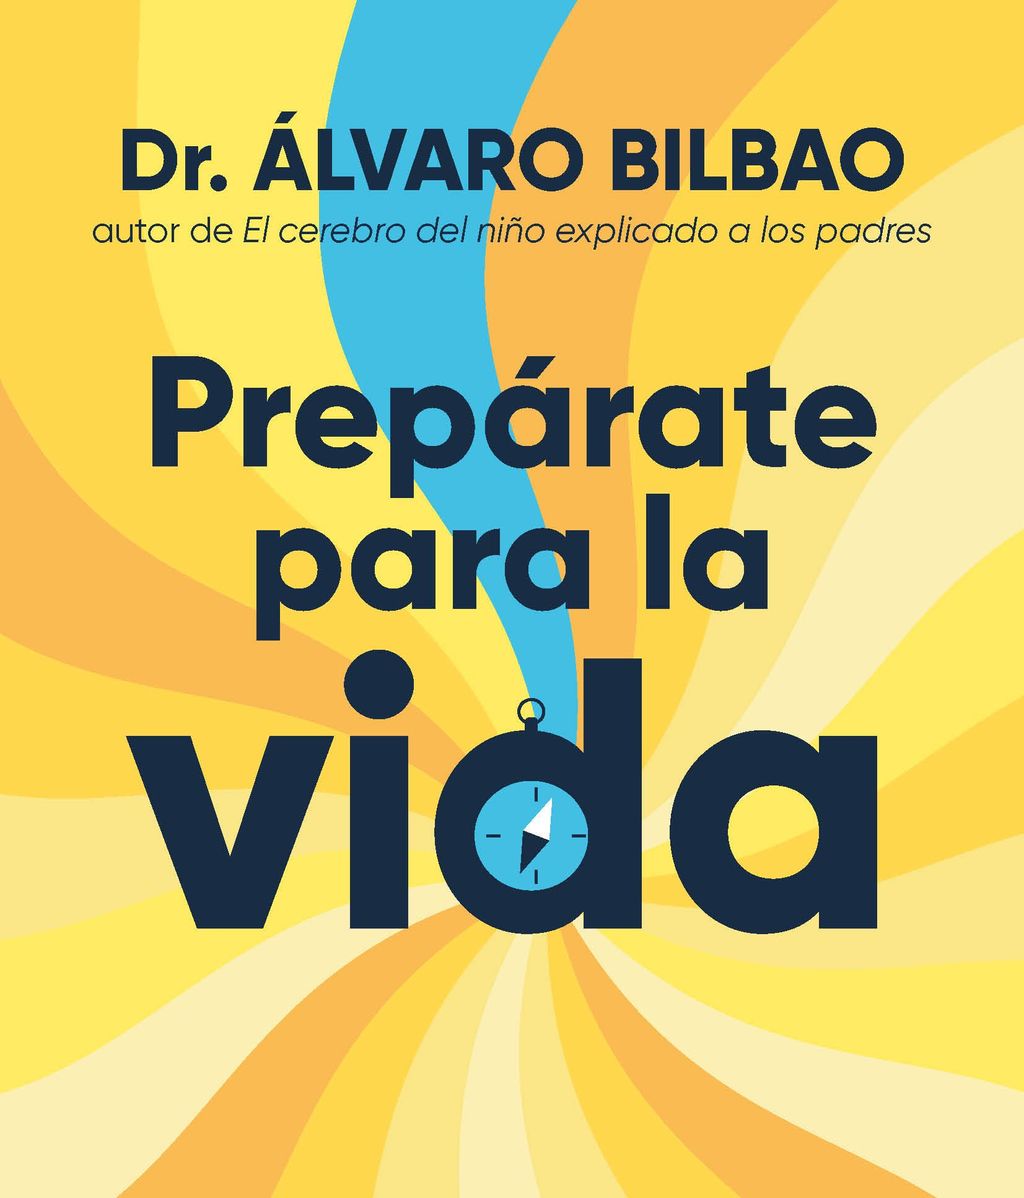 Portada del libro 'Prepárate para la vida', de Álvaro Bilbao